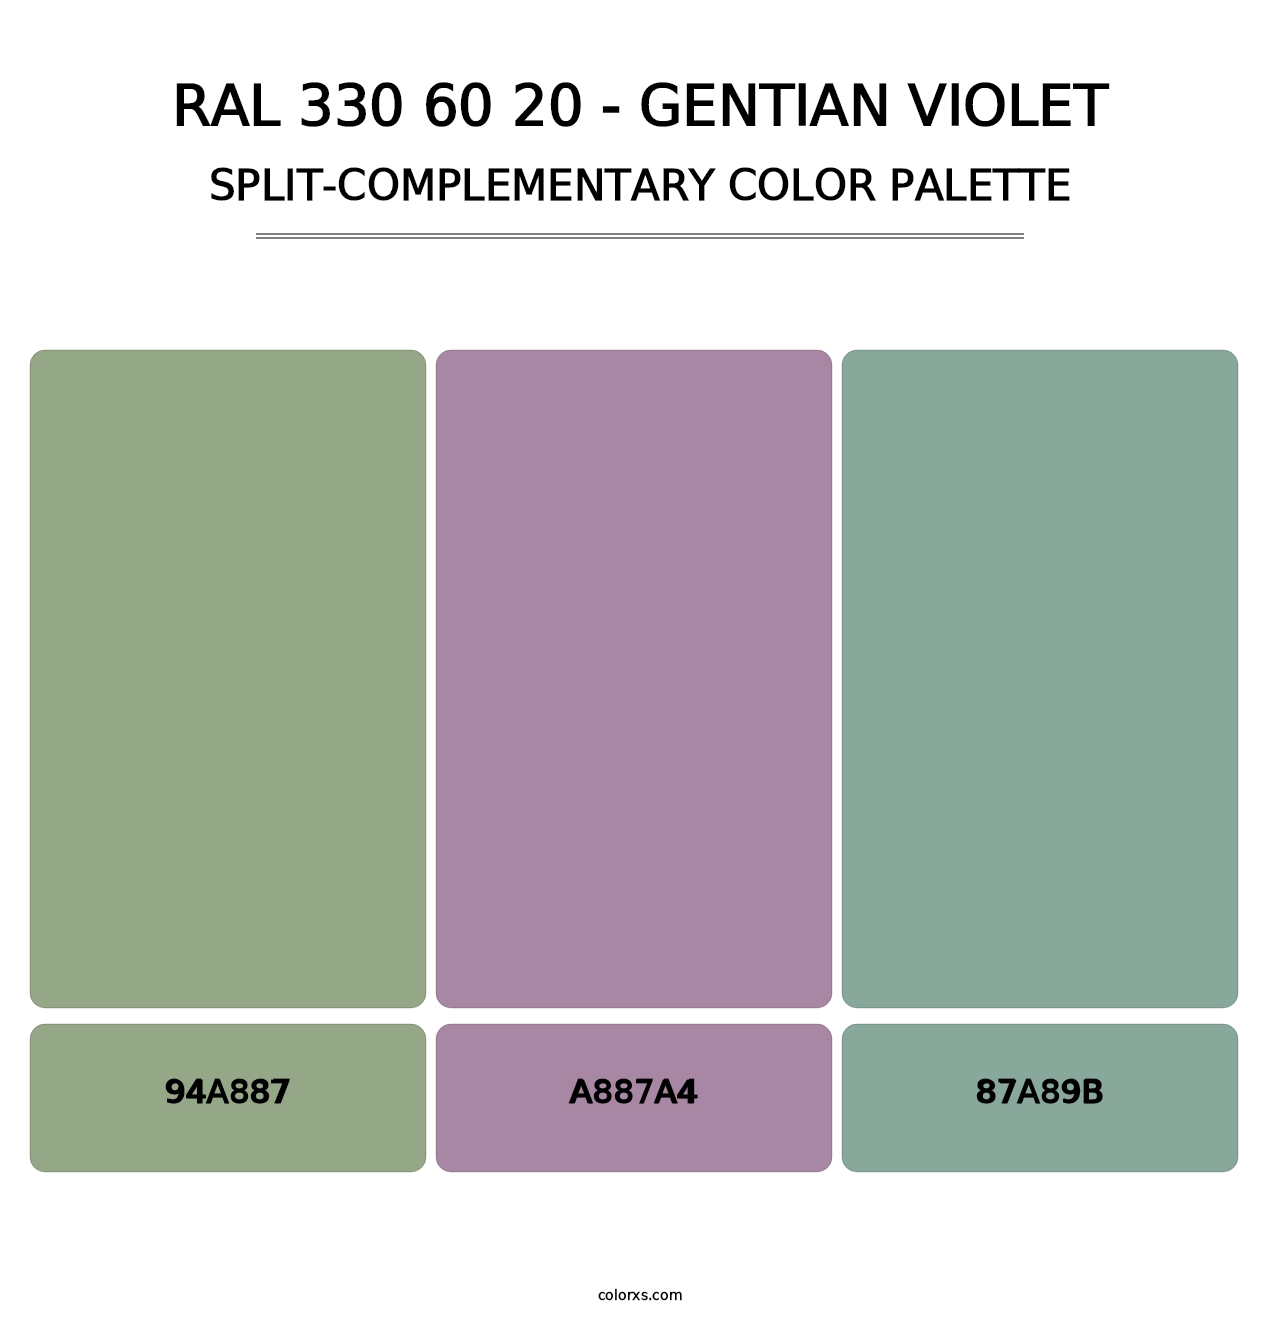 RAL 330 60 20 - Gentian Violet - Split-Complementary Color Palette